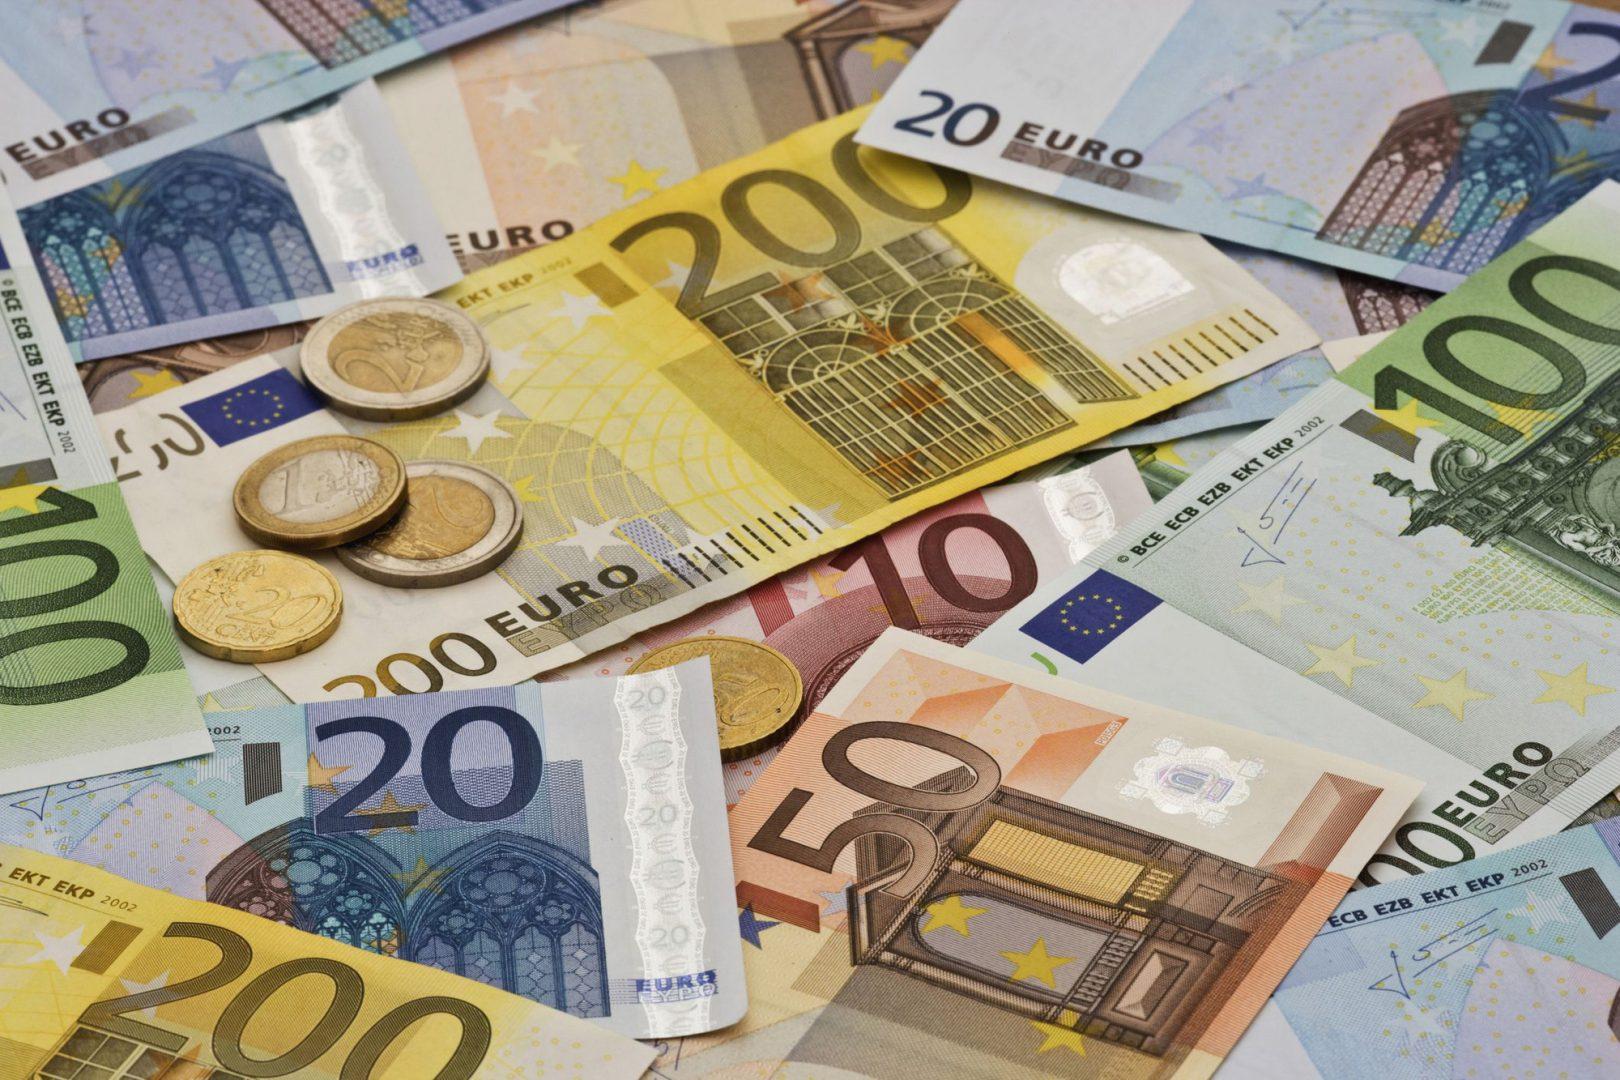 Short Euro đã trở thành giao dịch đồng thuận khi quyền chọn put thống trị thị trường và đường cong biến động ngụ ý dịch chuyển